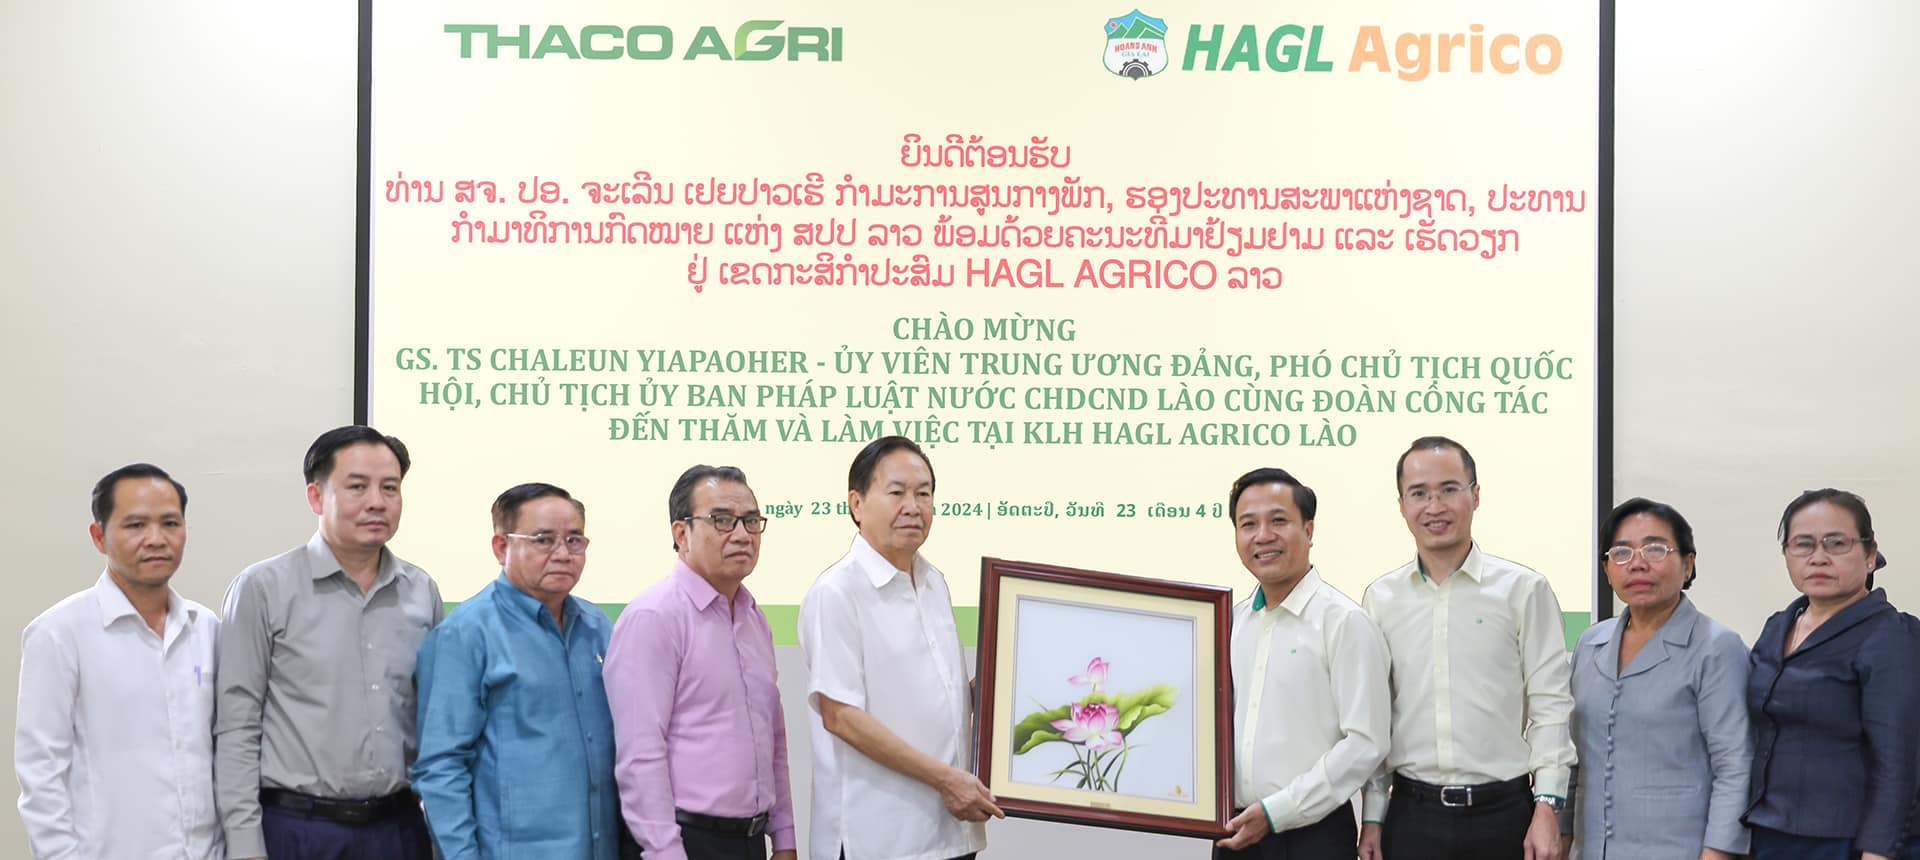 Đại diện Lãnh đạo KLH HAGL AGRICO Lào tặng quà lưu niệm cho đoàn công tác